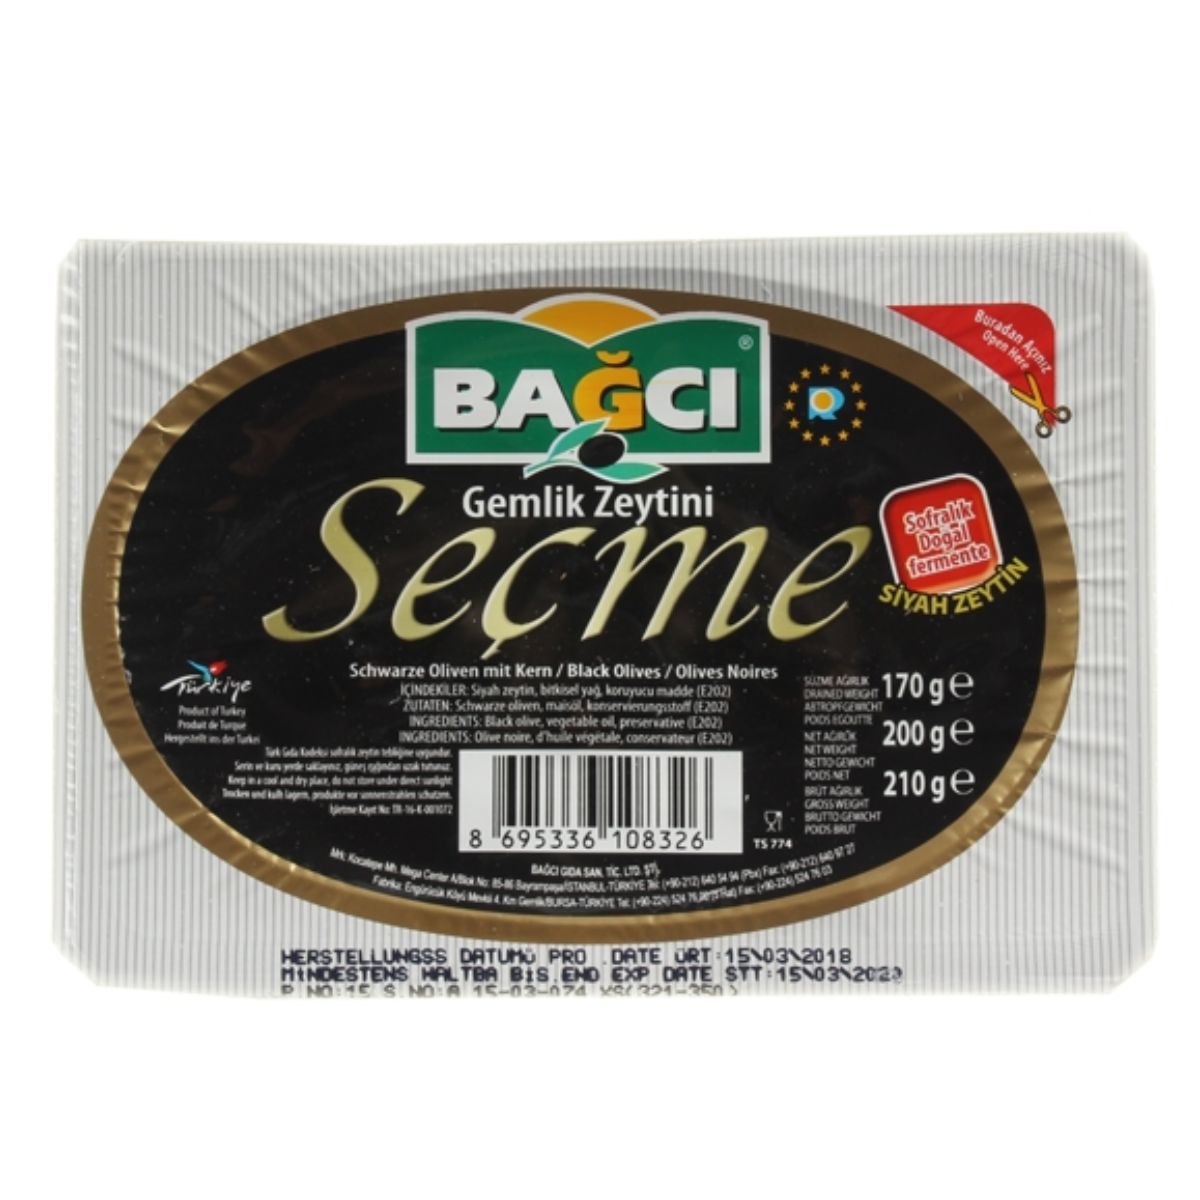 Bagci - Black Olives - 200g gelatine sceme 250g.